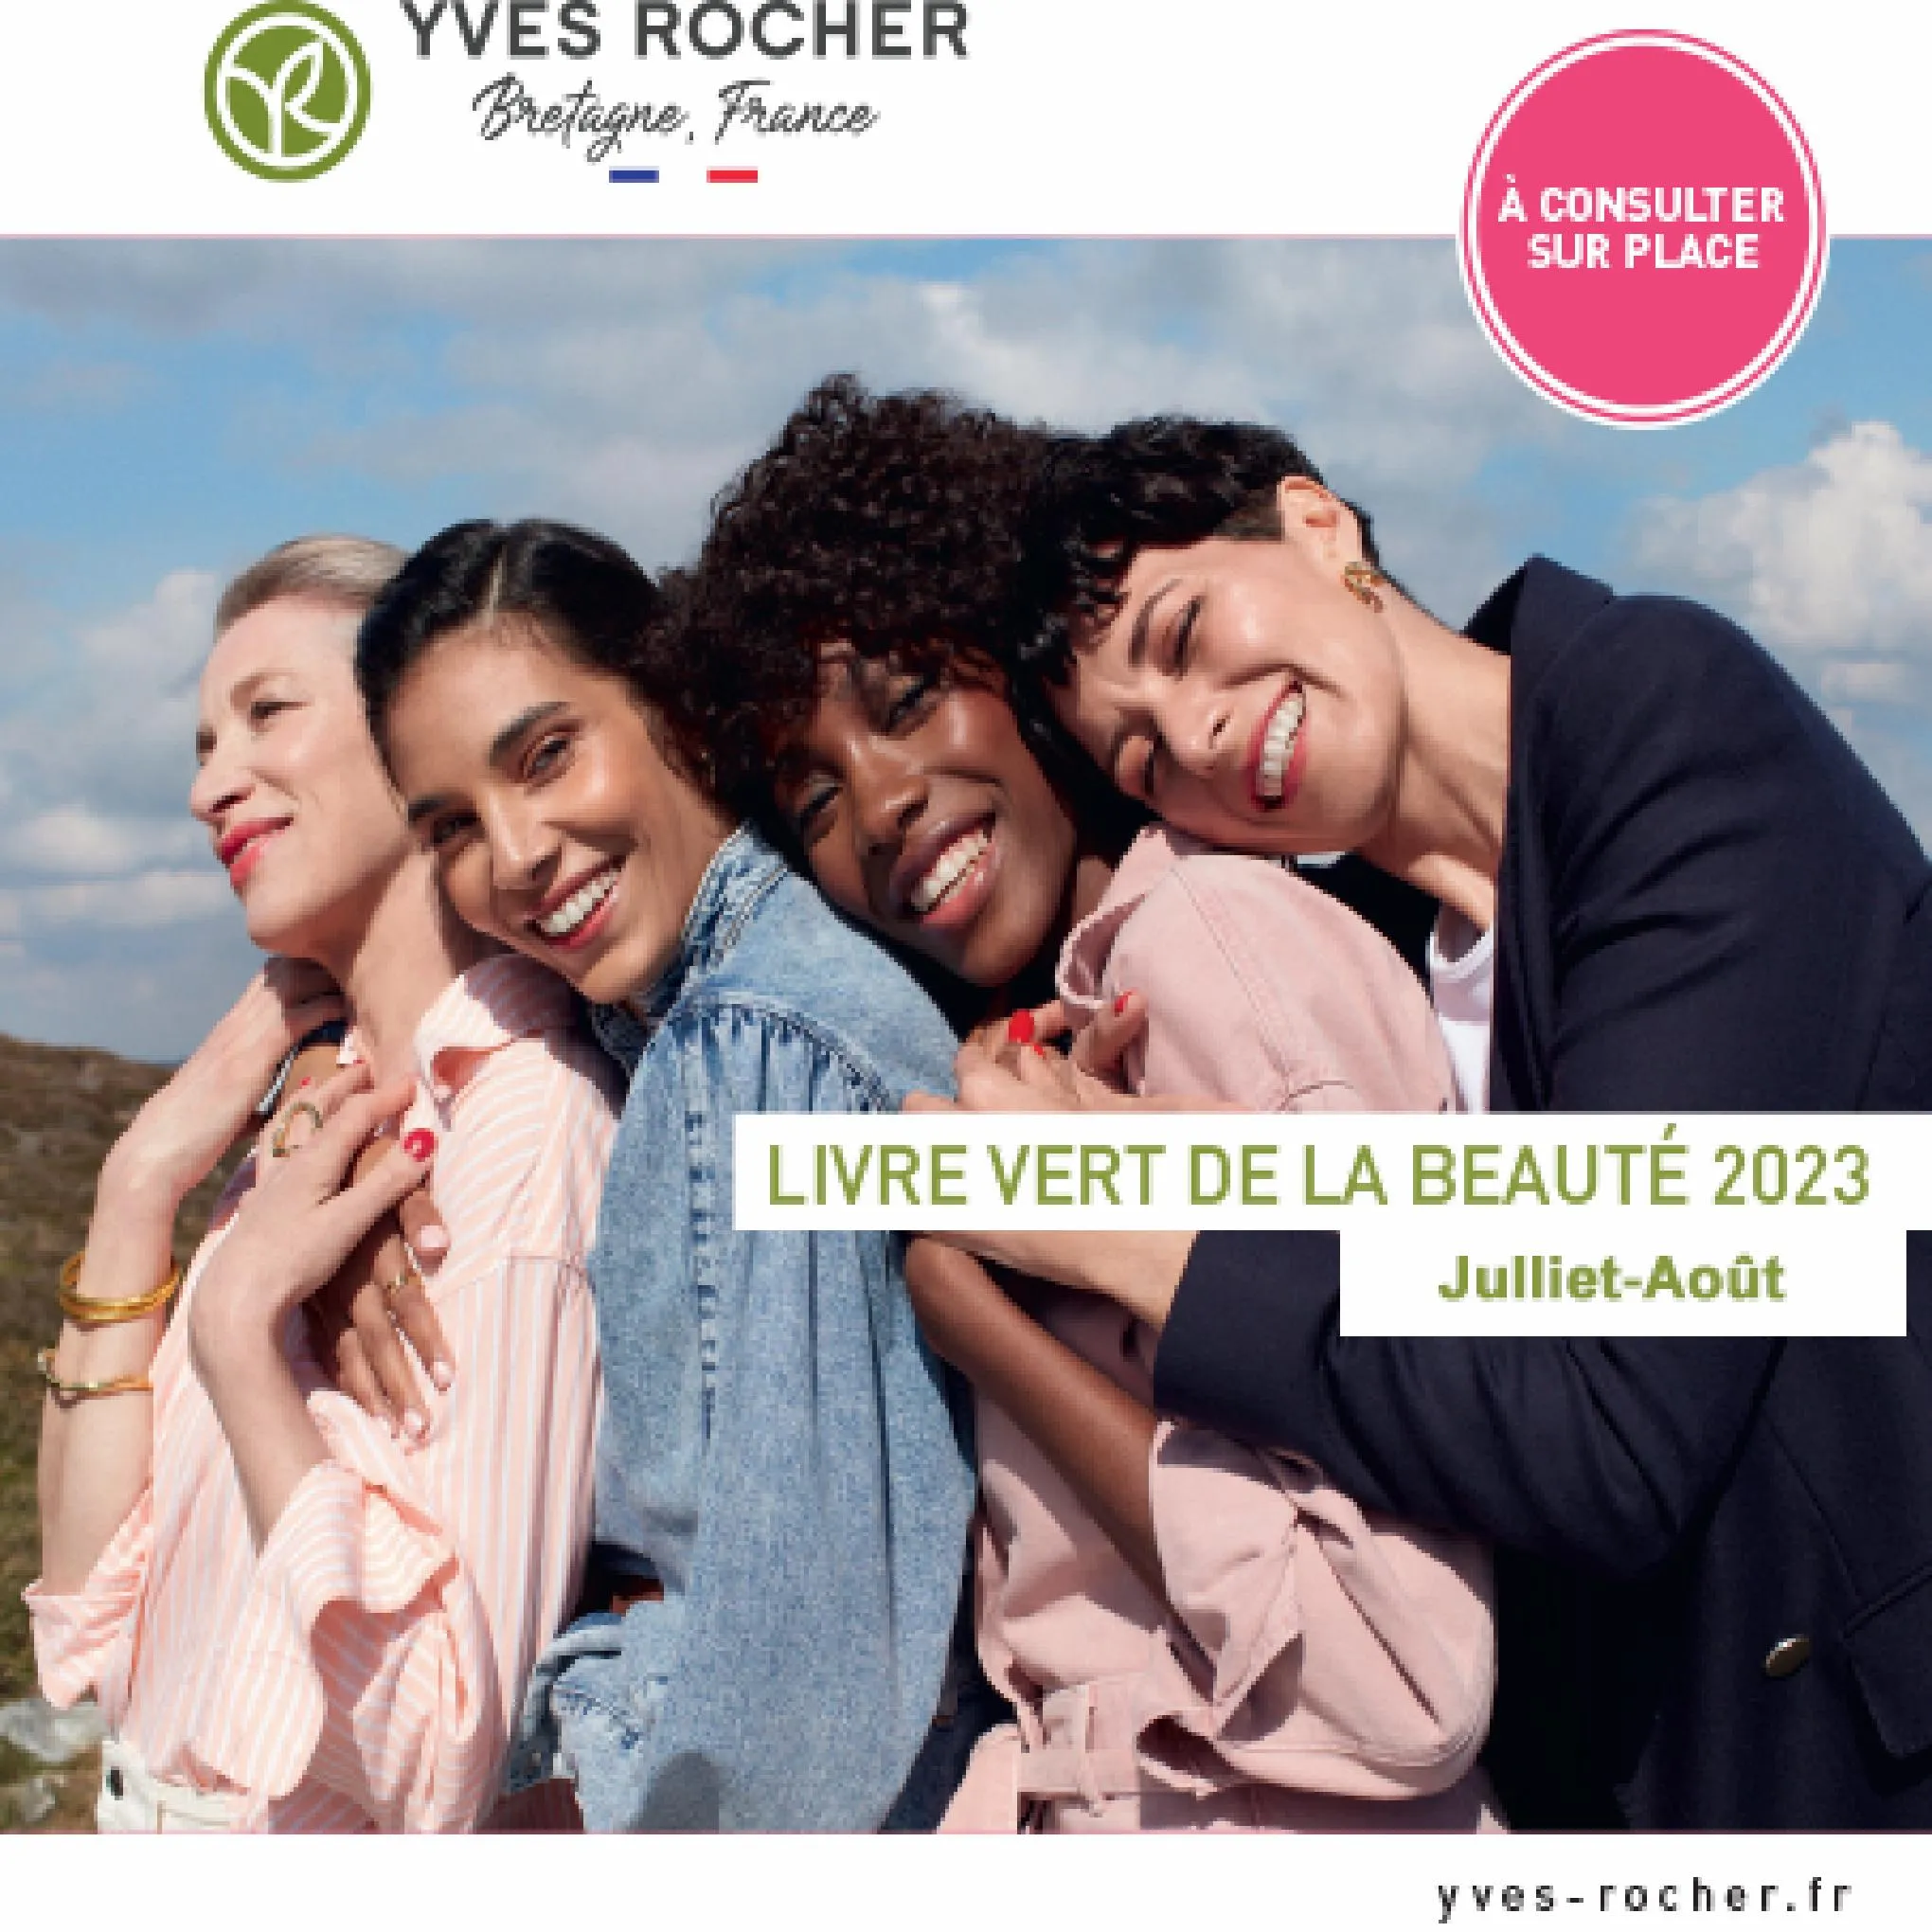 Catalogue Livre vert de la beaute 2023, page 00001